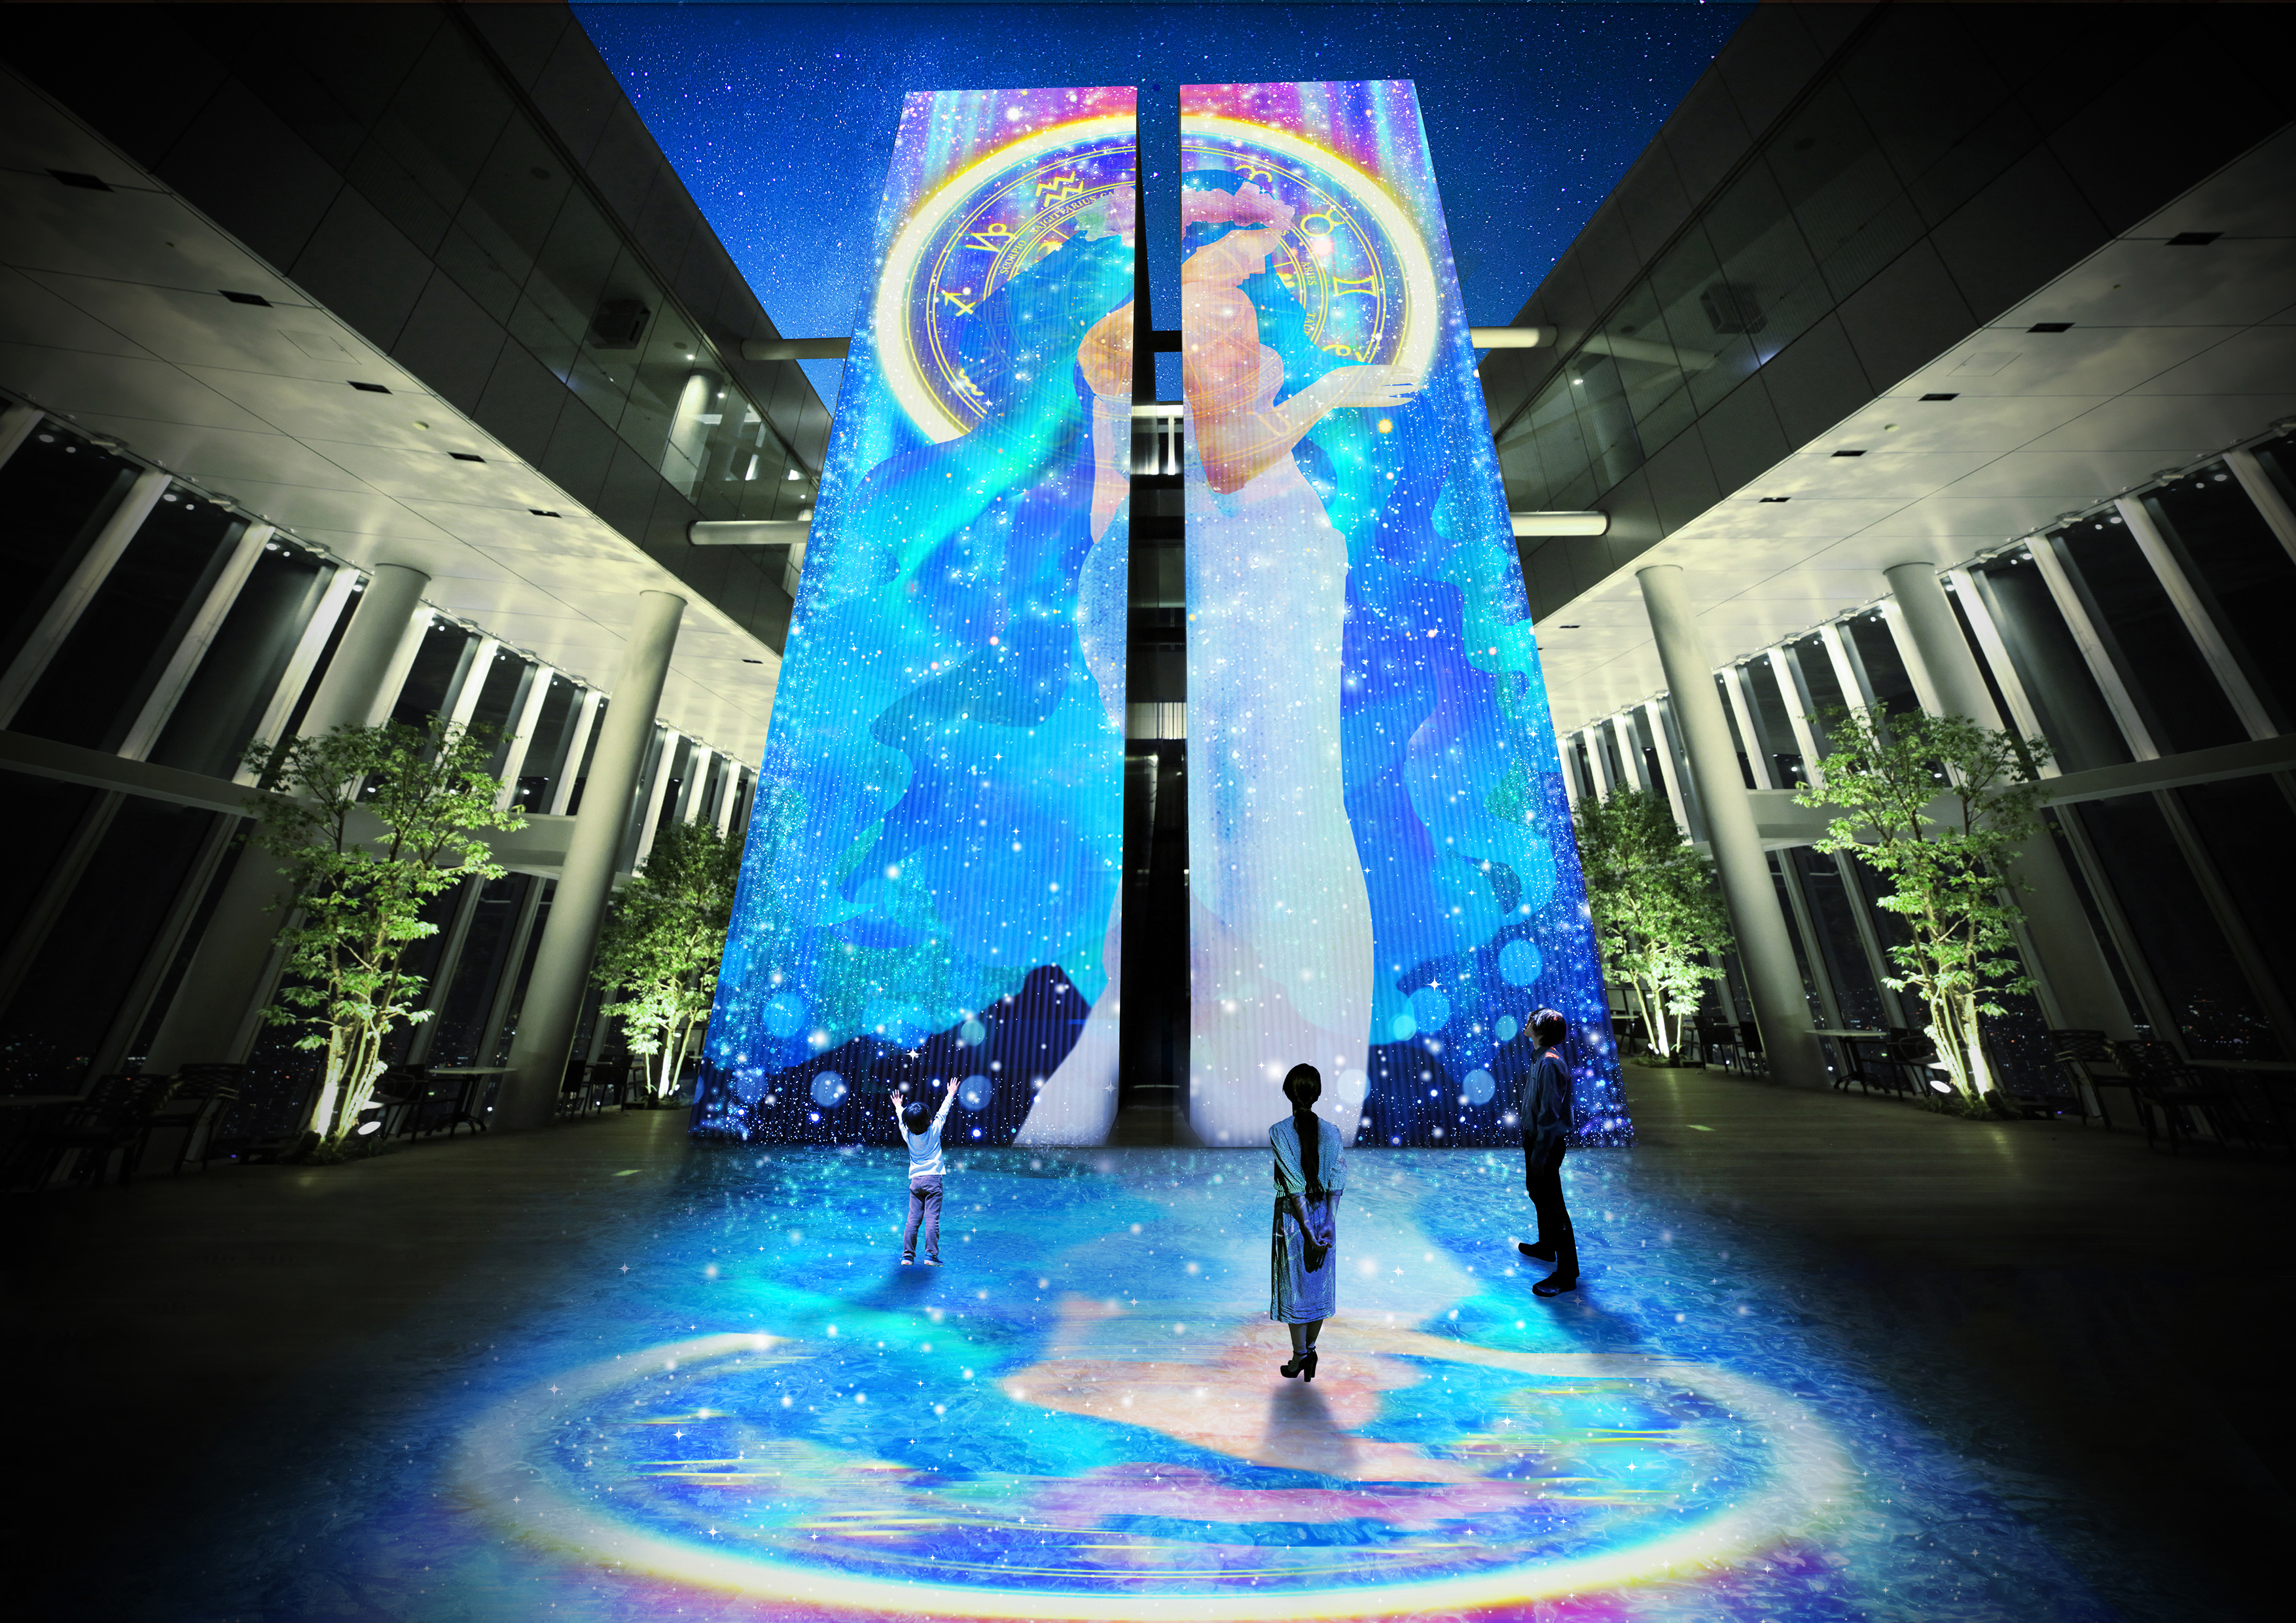 Naked 大阪芸術大学 あべのハルカス展望台にコラボ作品が登場 株式会社ネイキッドのプレスリリース